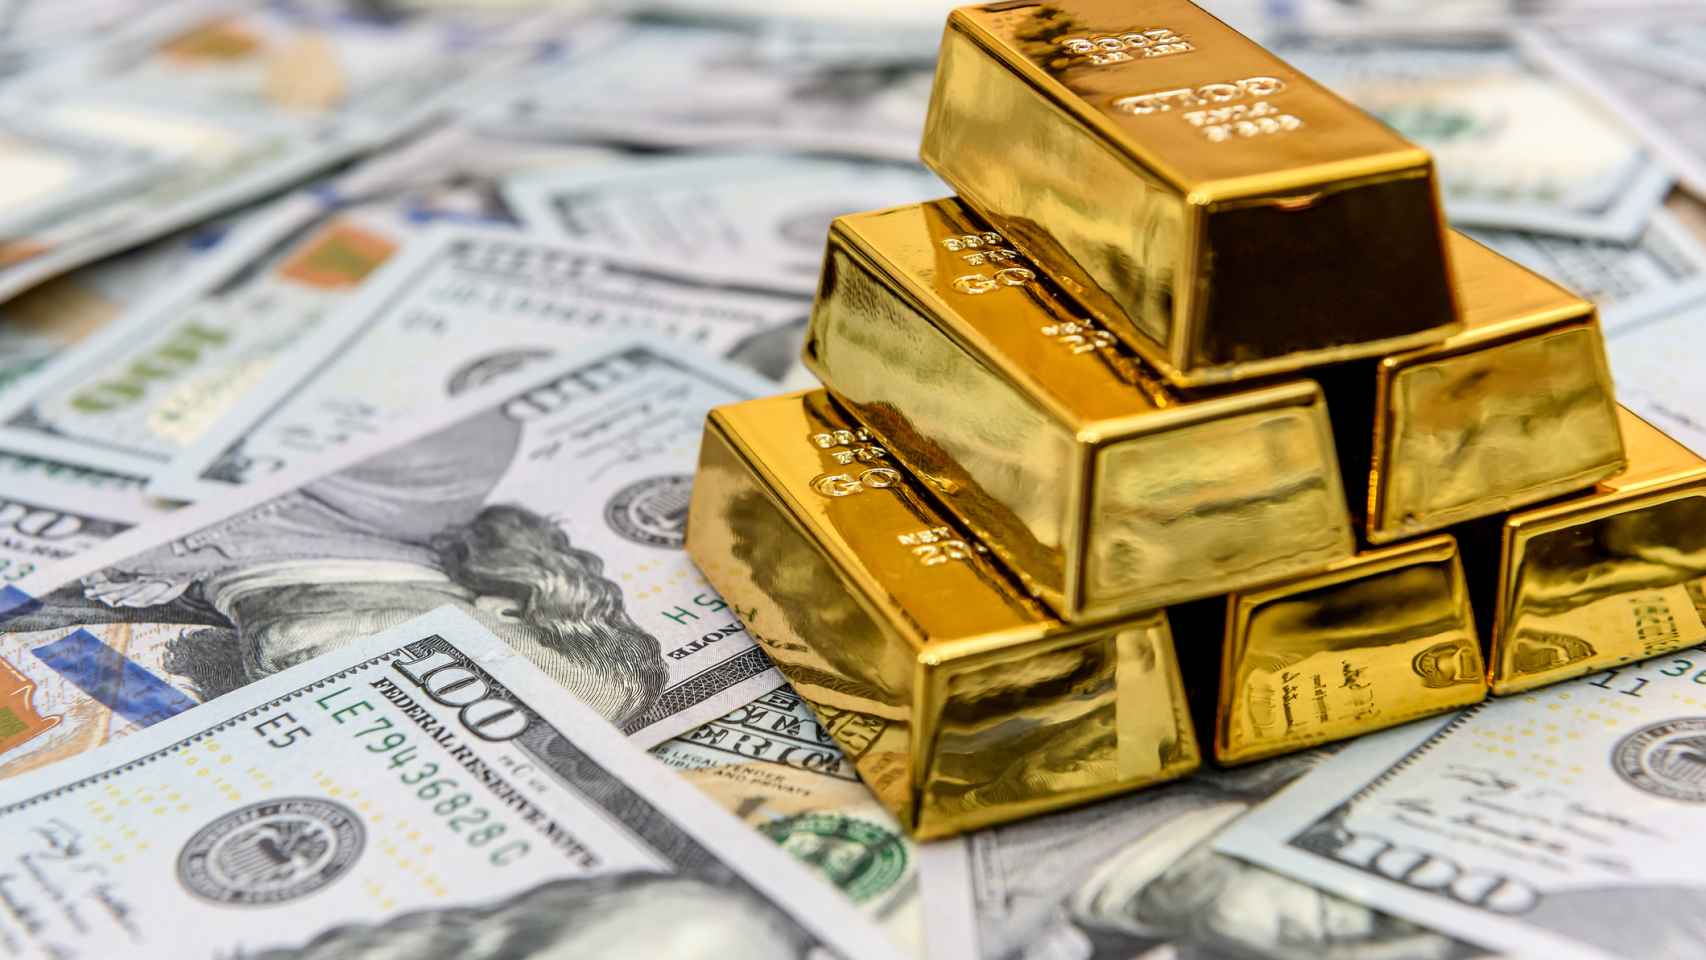 El oro está considerado un 'valor seguro' por su rentabilidad asegurada a medio y largo plazo.